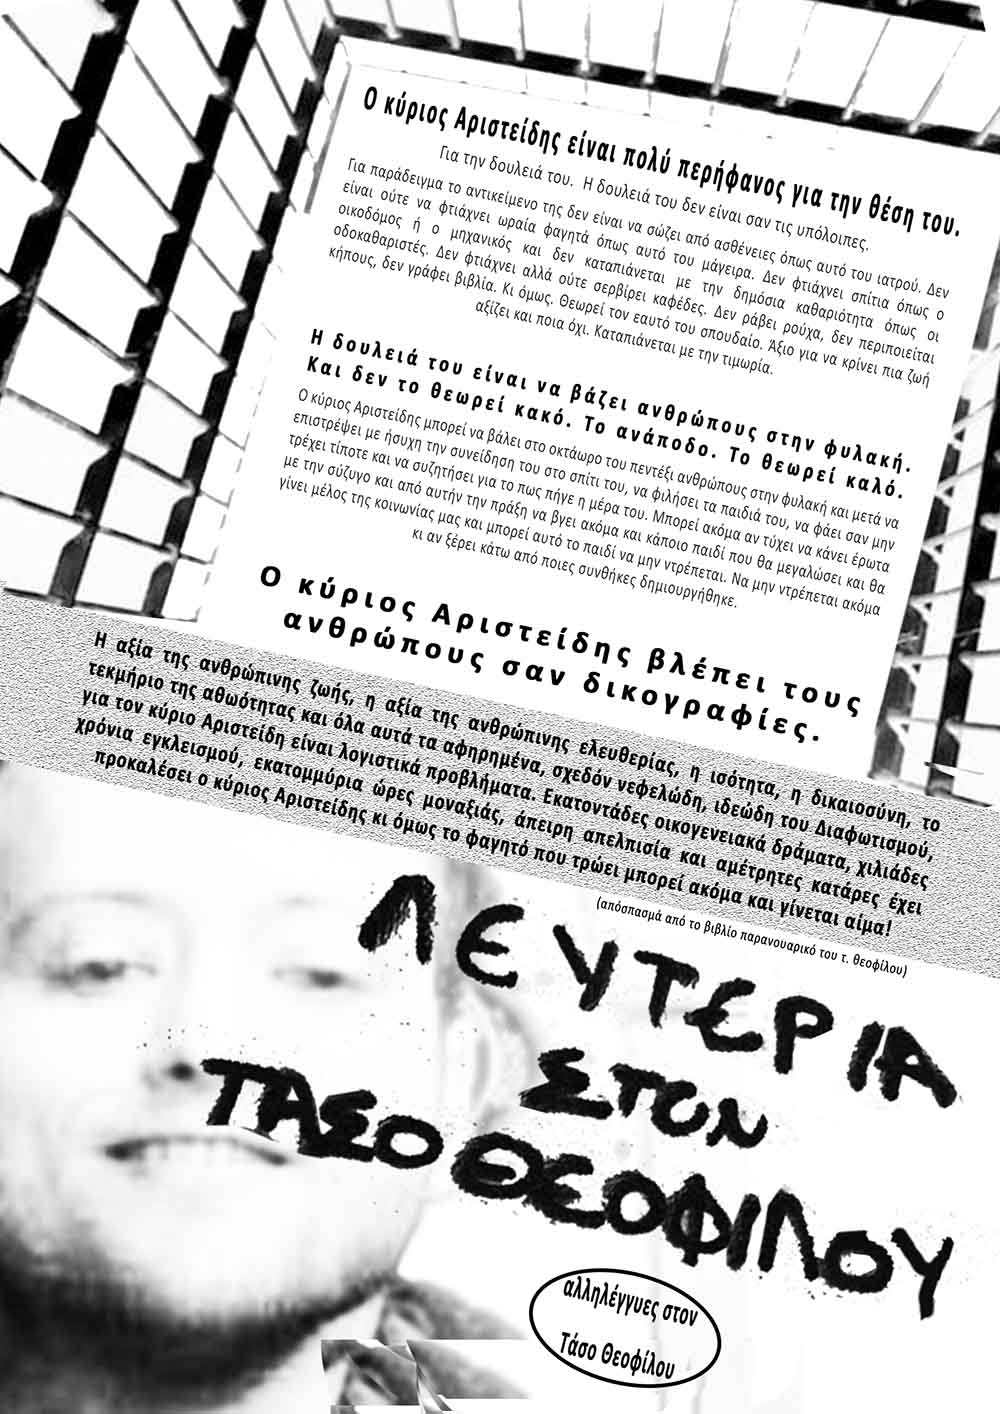 Ο κύριος Αριστείδης βλέπει τους ανθρώπους σαν δικογραφίες… (αφίσα αλληλεγγύης στο Τάσο Θεοφίλου)